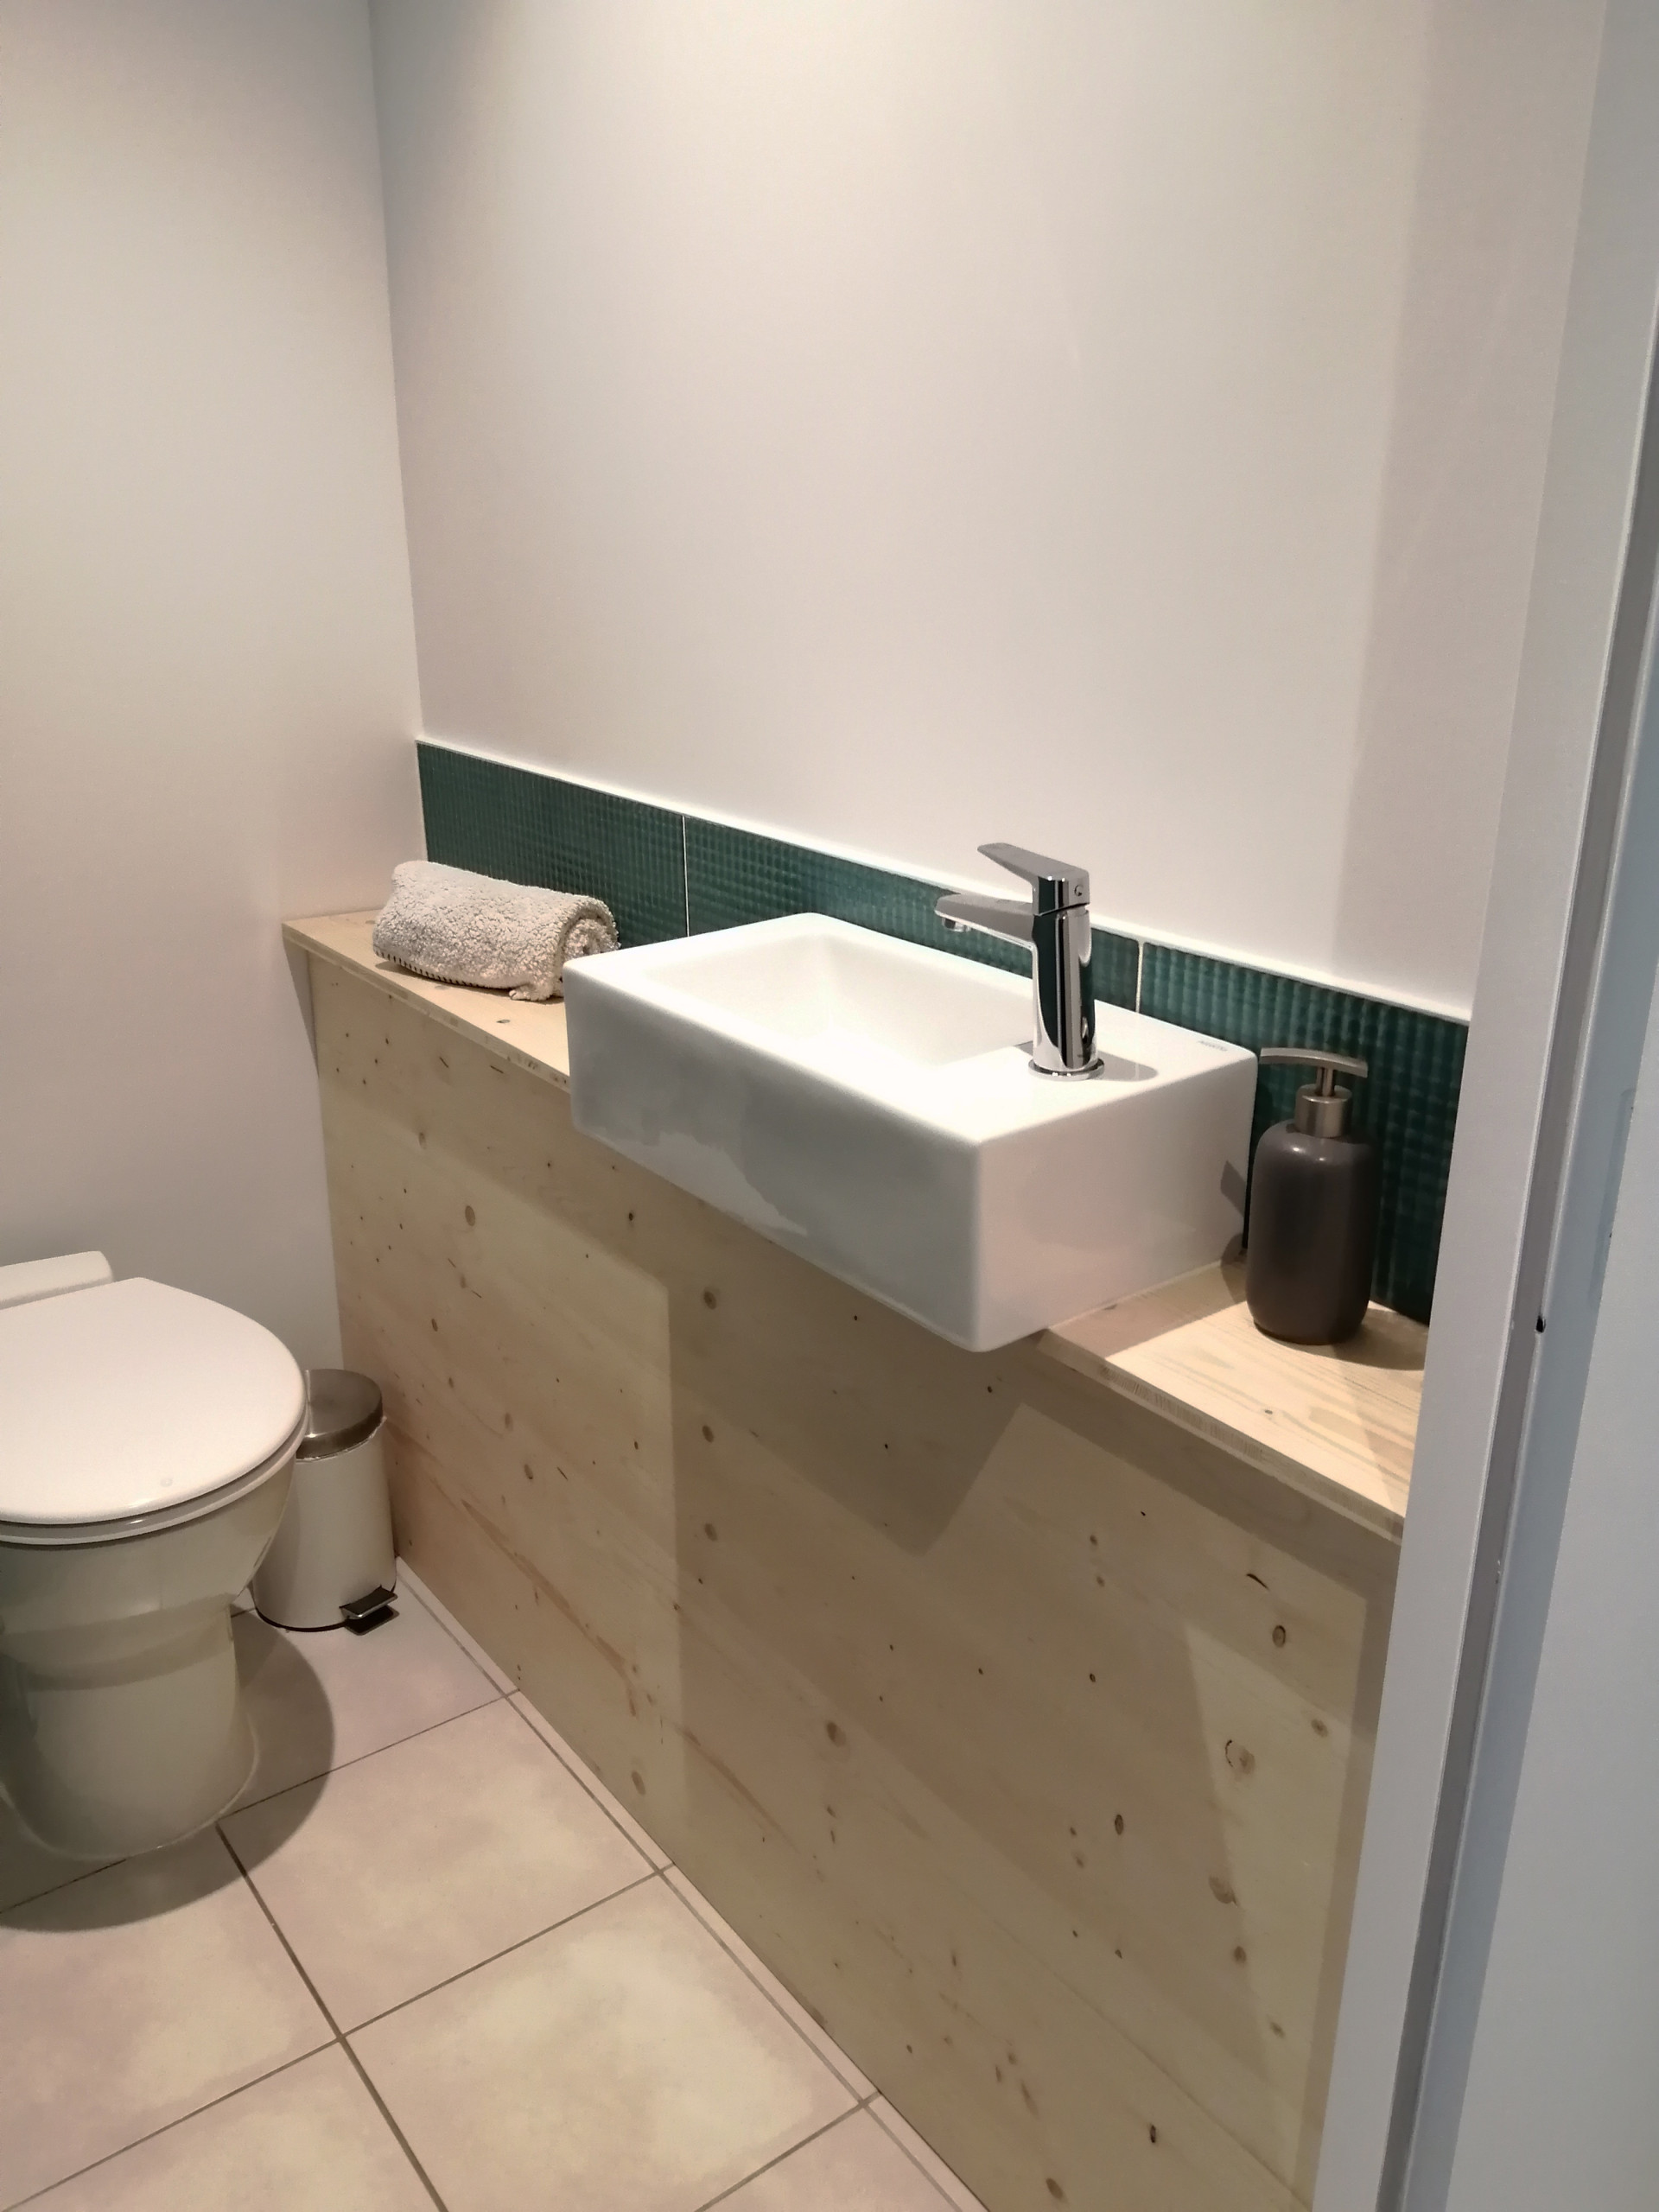 Aménagement d'une salle de bain avec WC séparé et réaménagement des couloirs